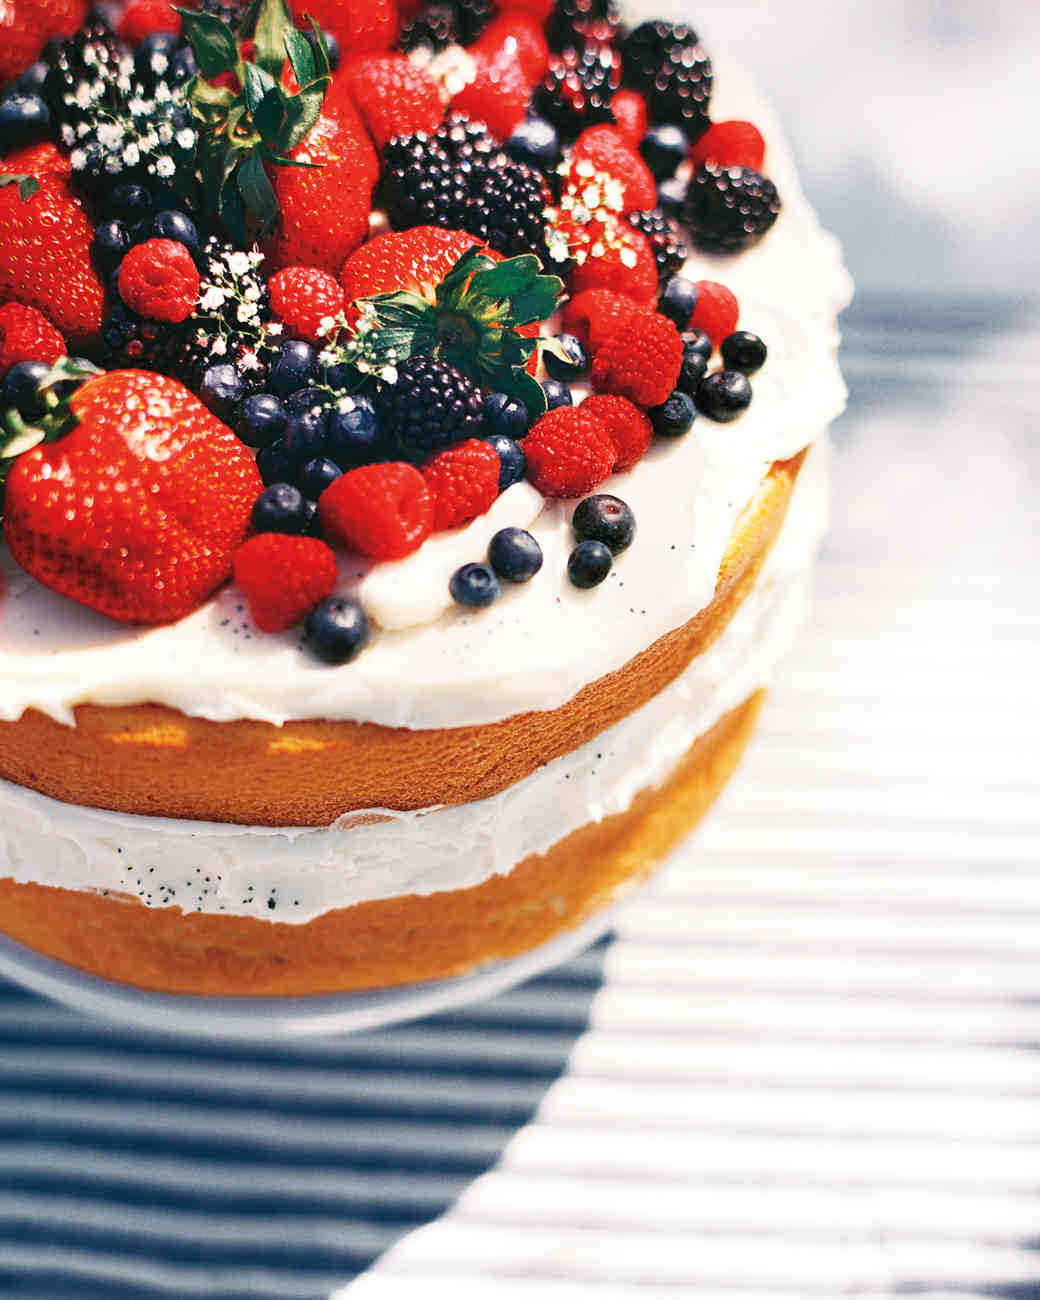 Naked cake Stawberry - Cake Beauty